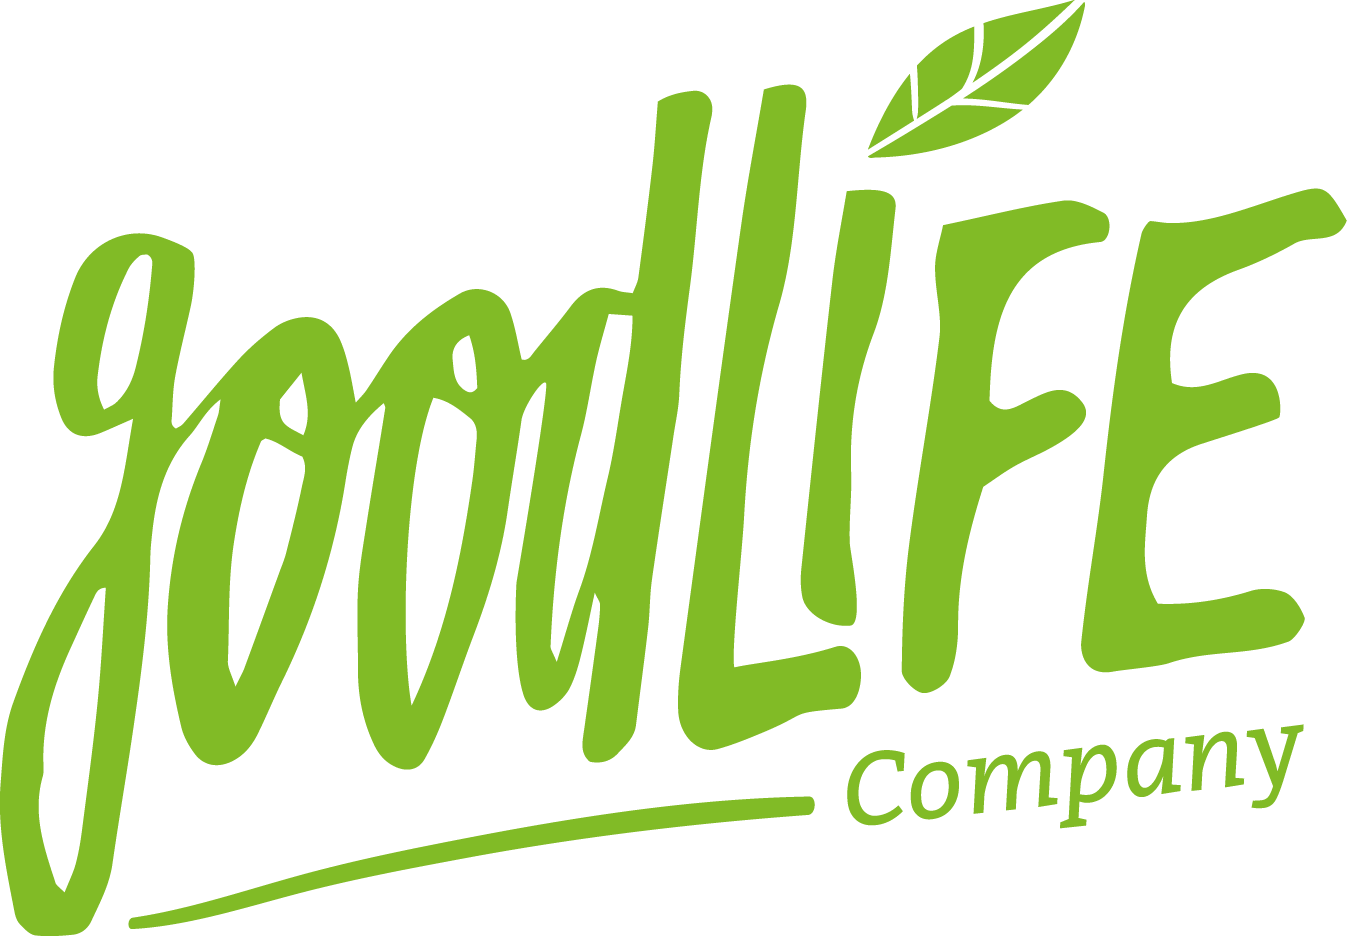 Goodlife Company